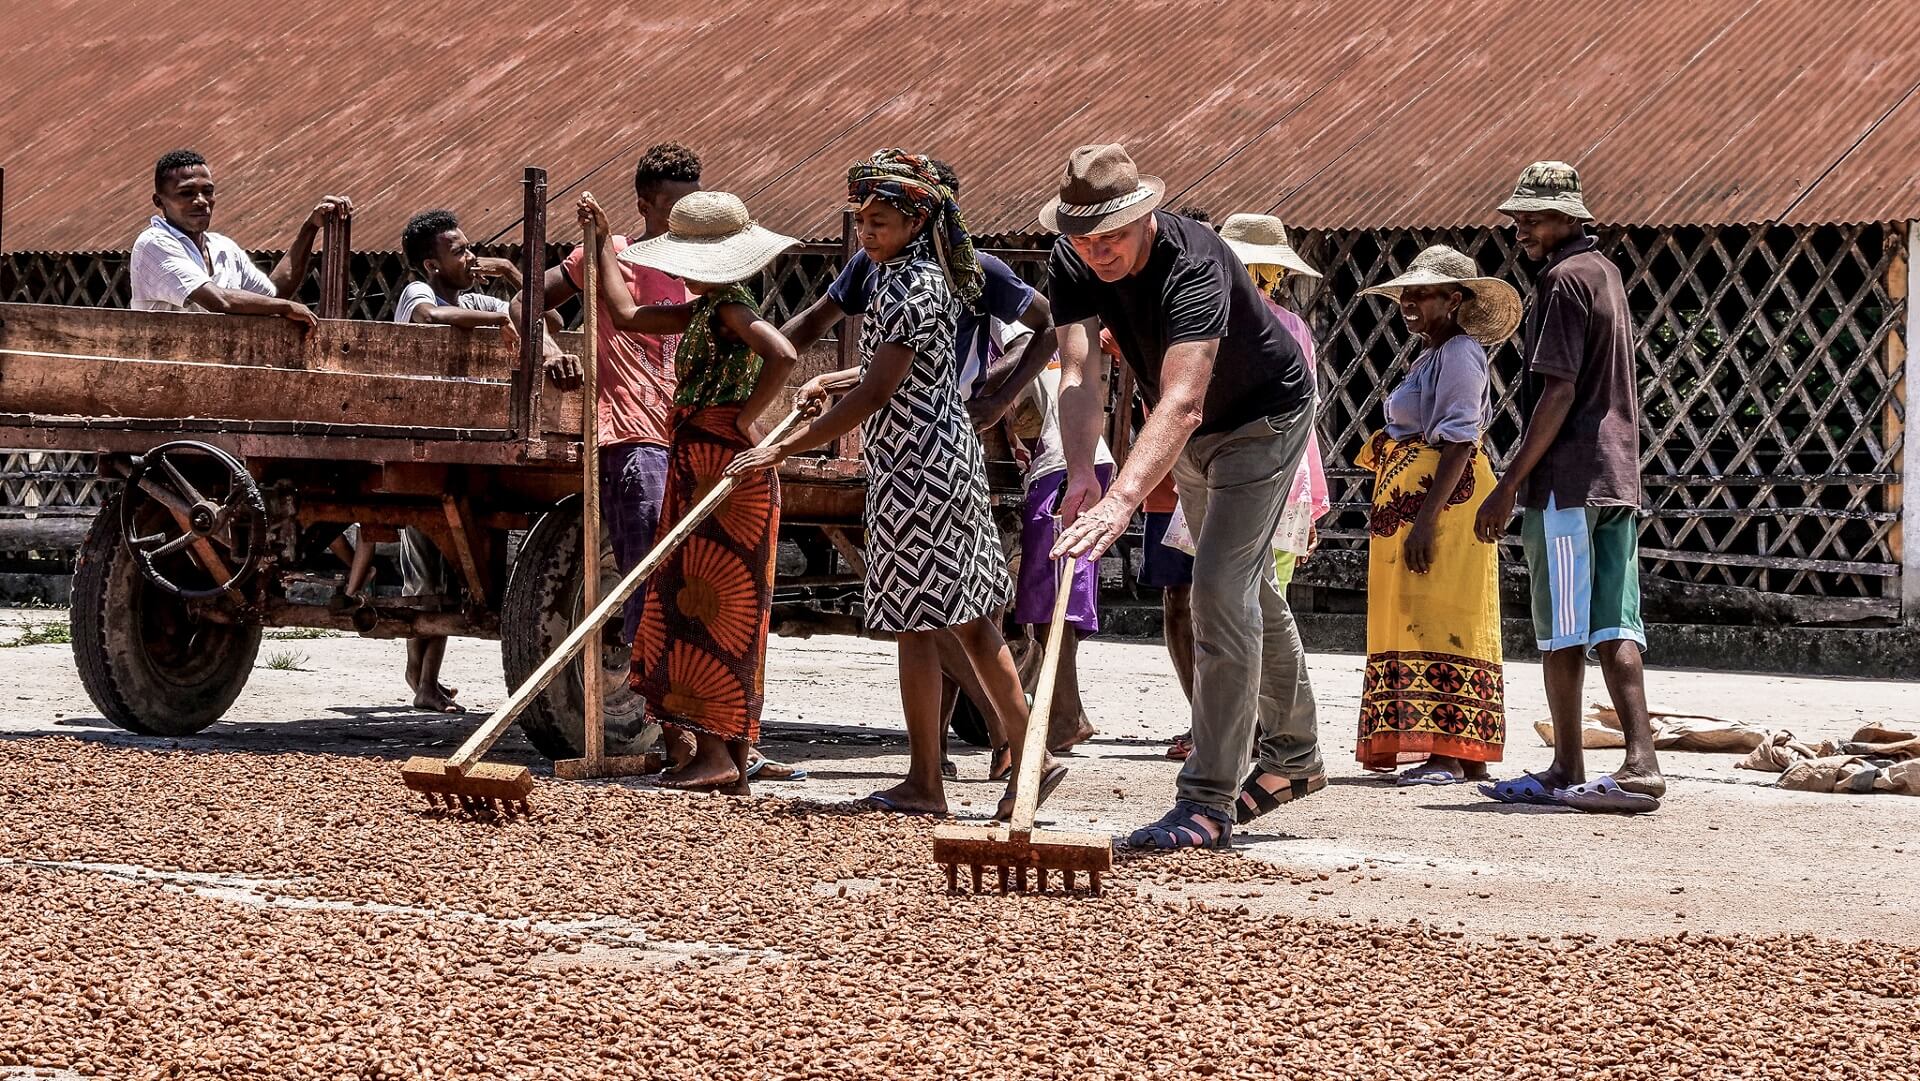 Madagaskar gilt neben der Vanilleproduktion auch als Kakaobohnenparadies.